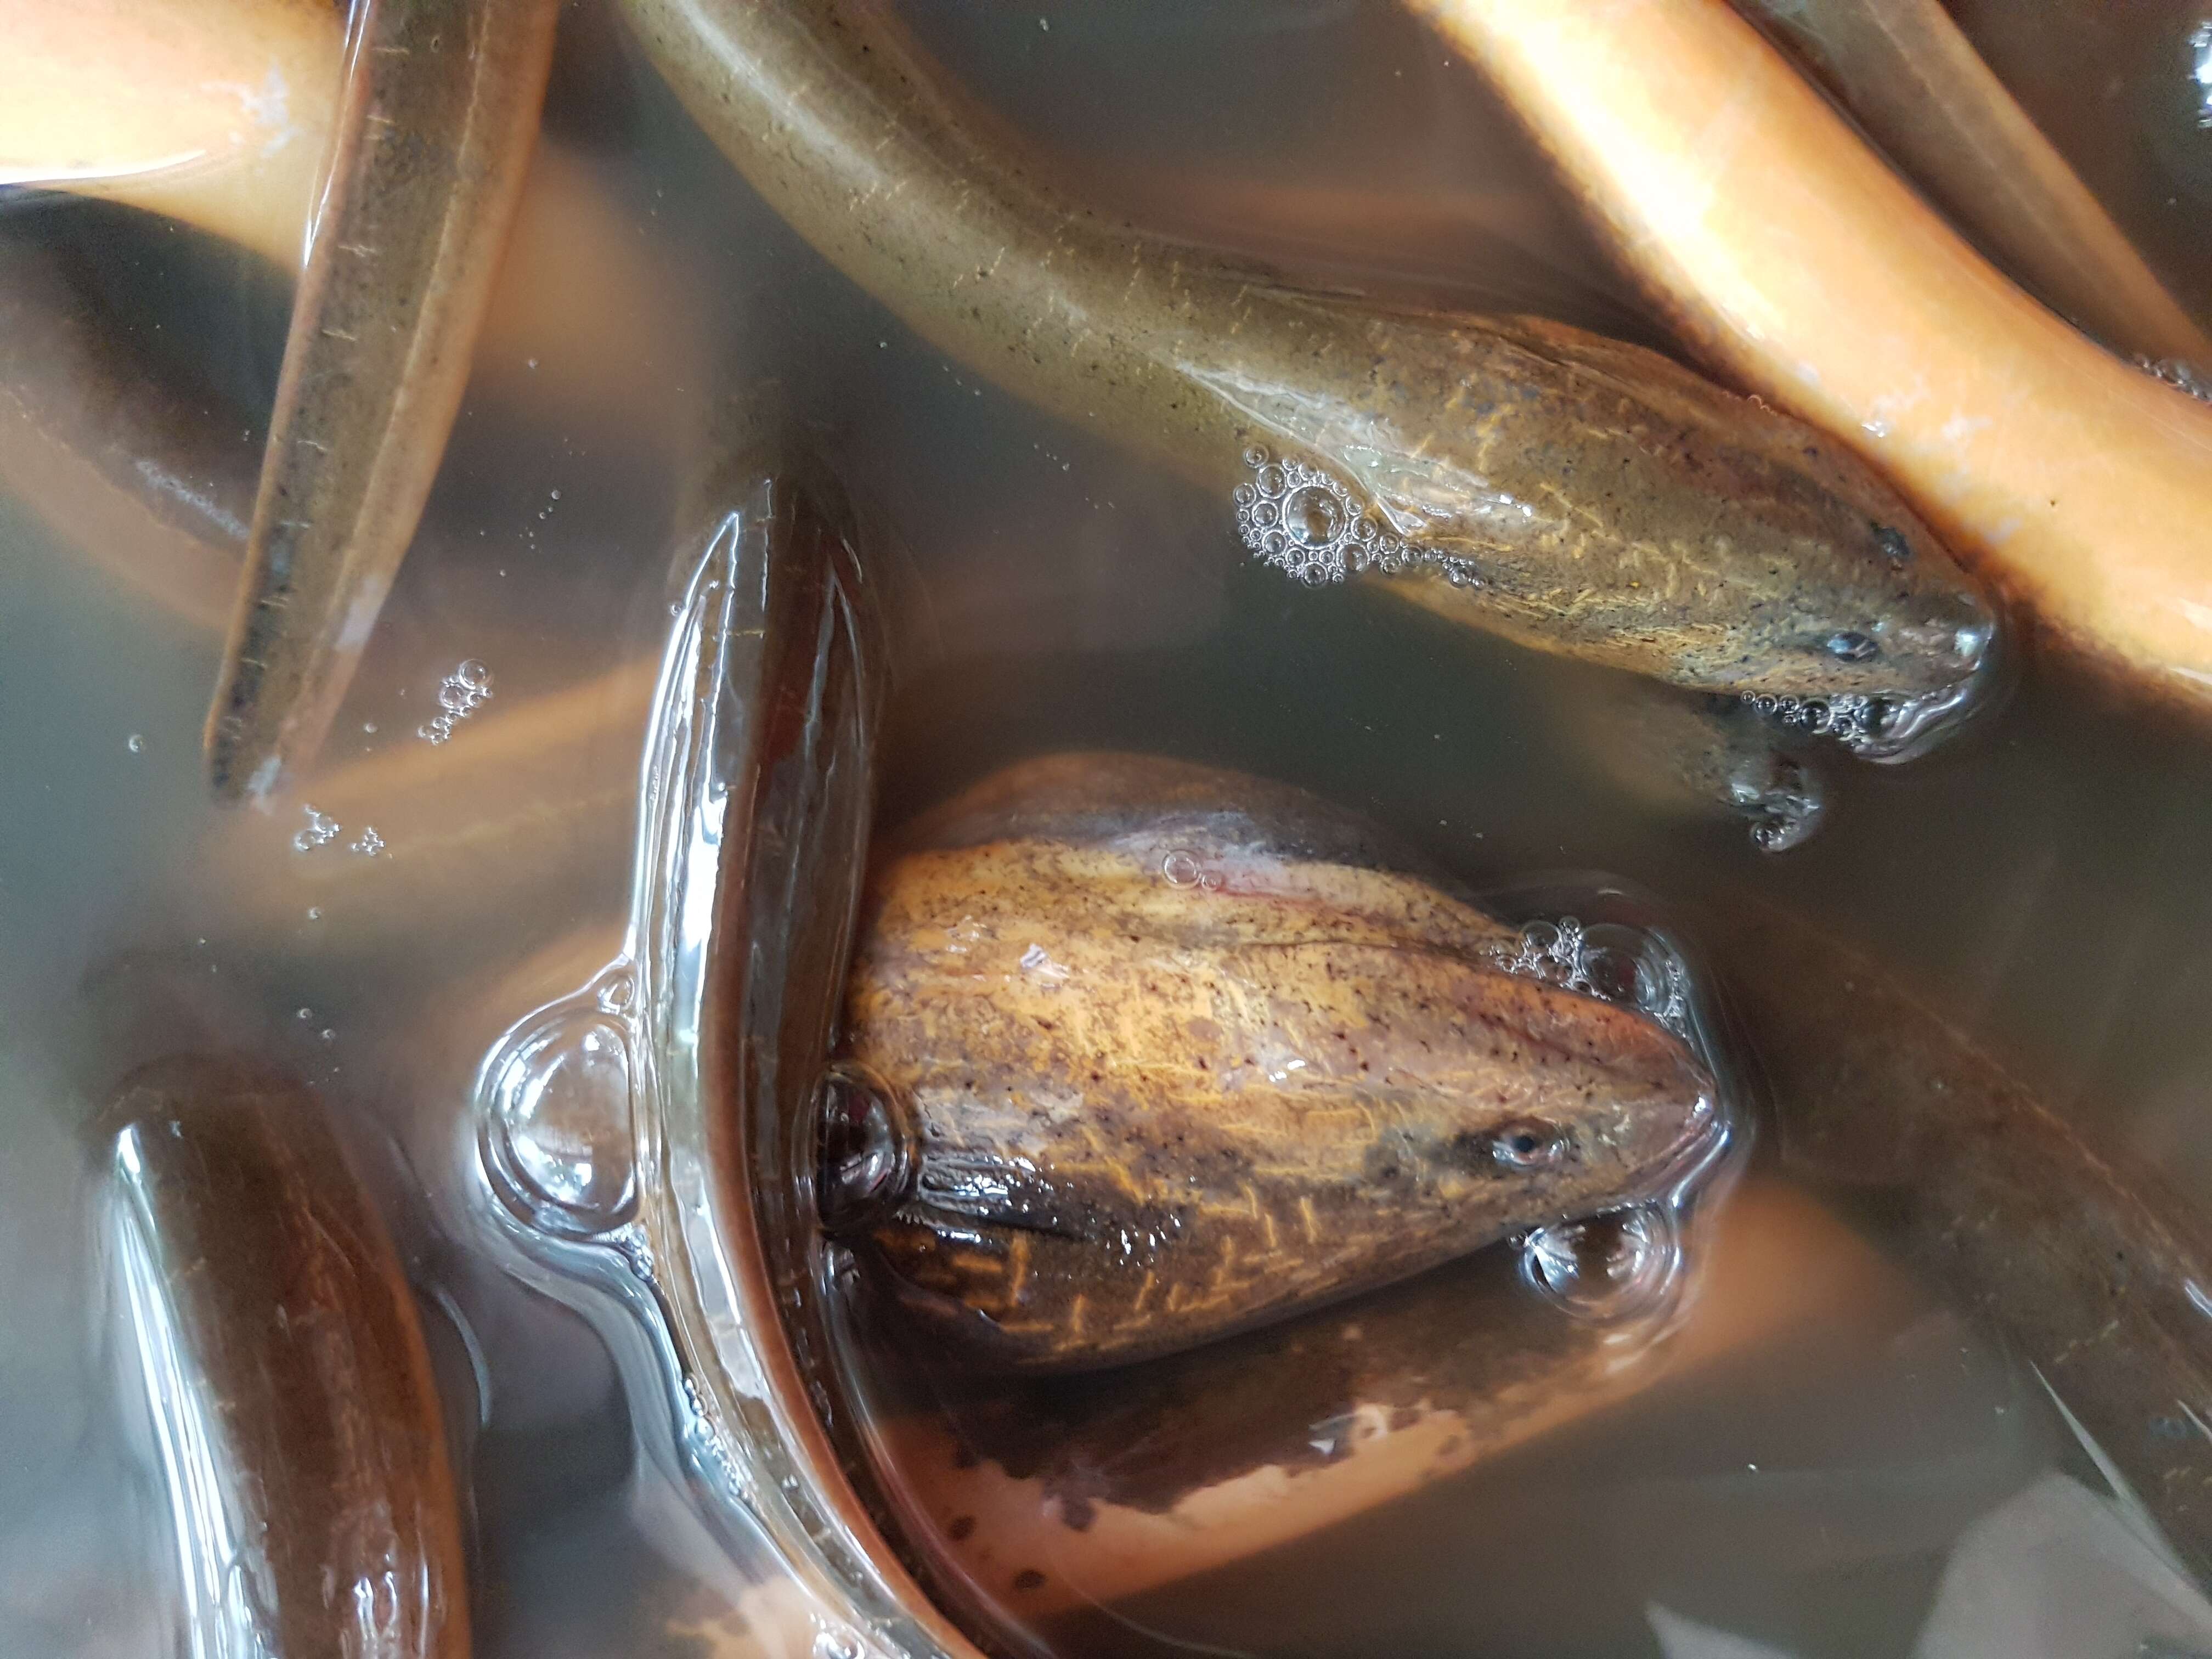 Image of Asian swamp eel